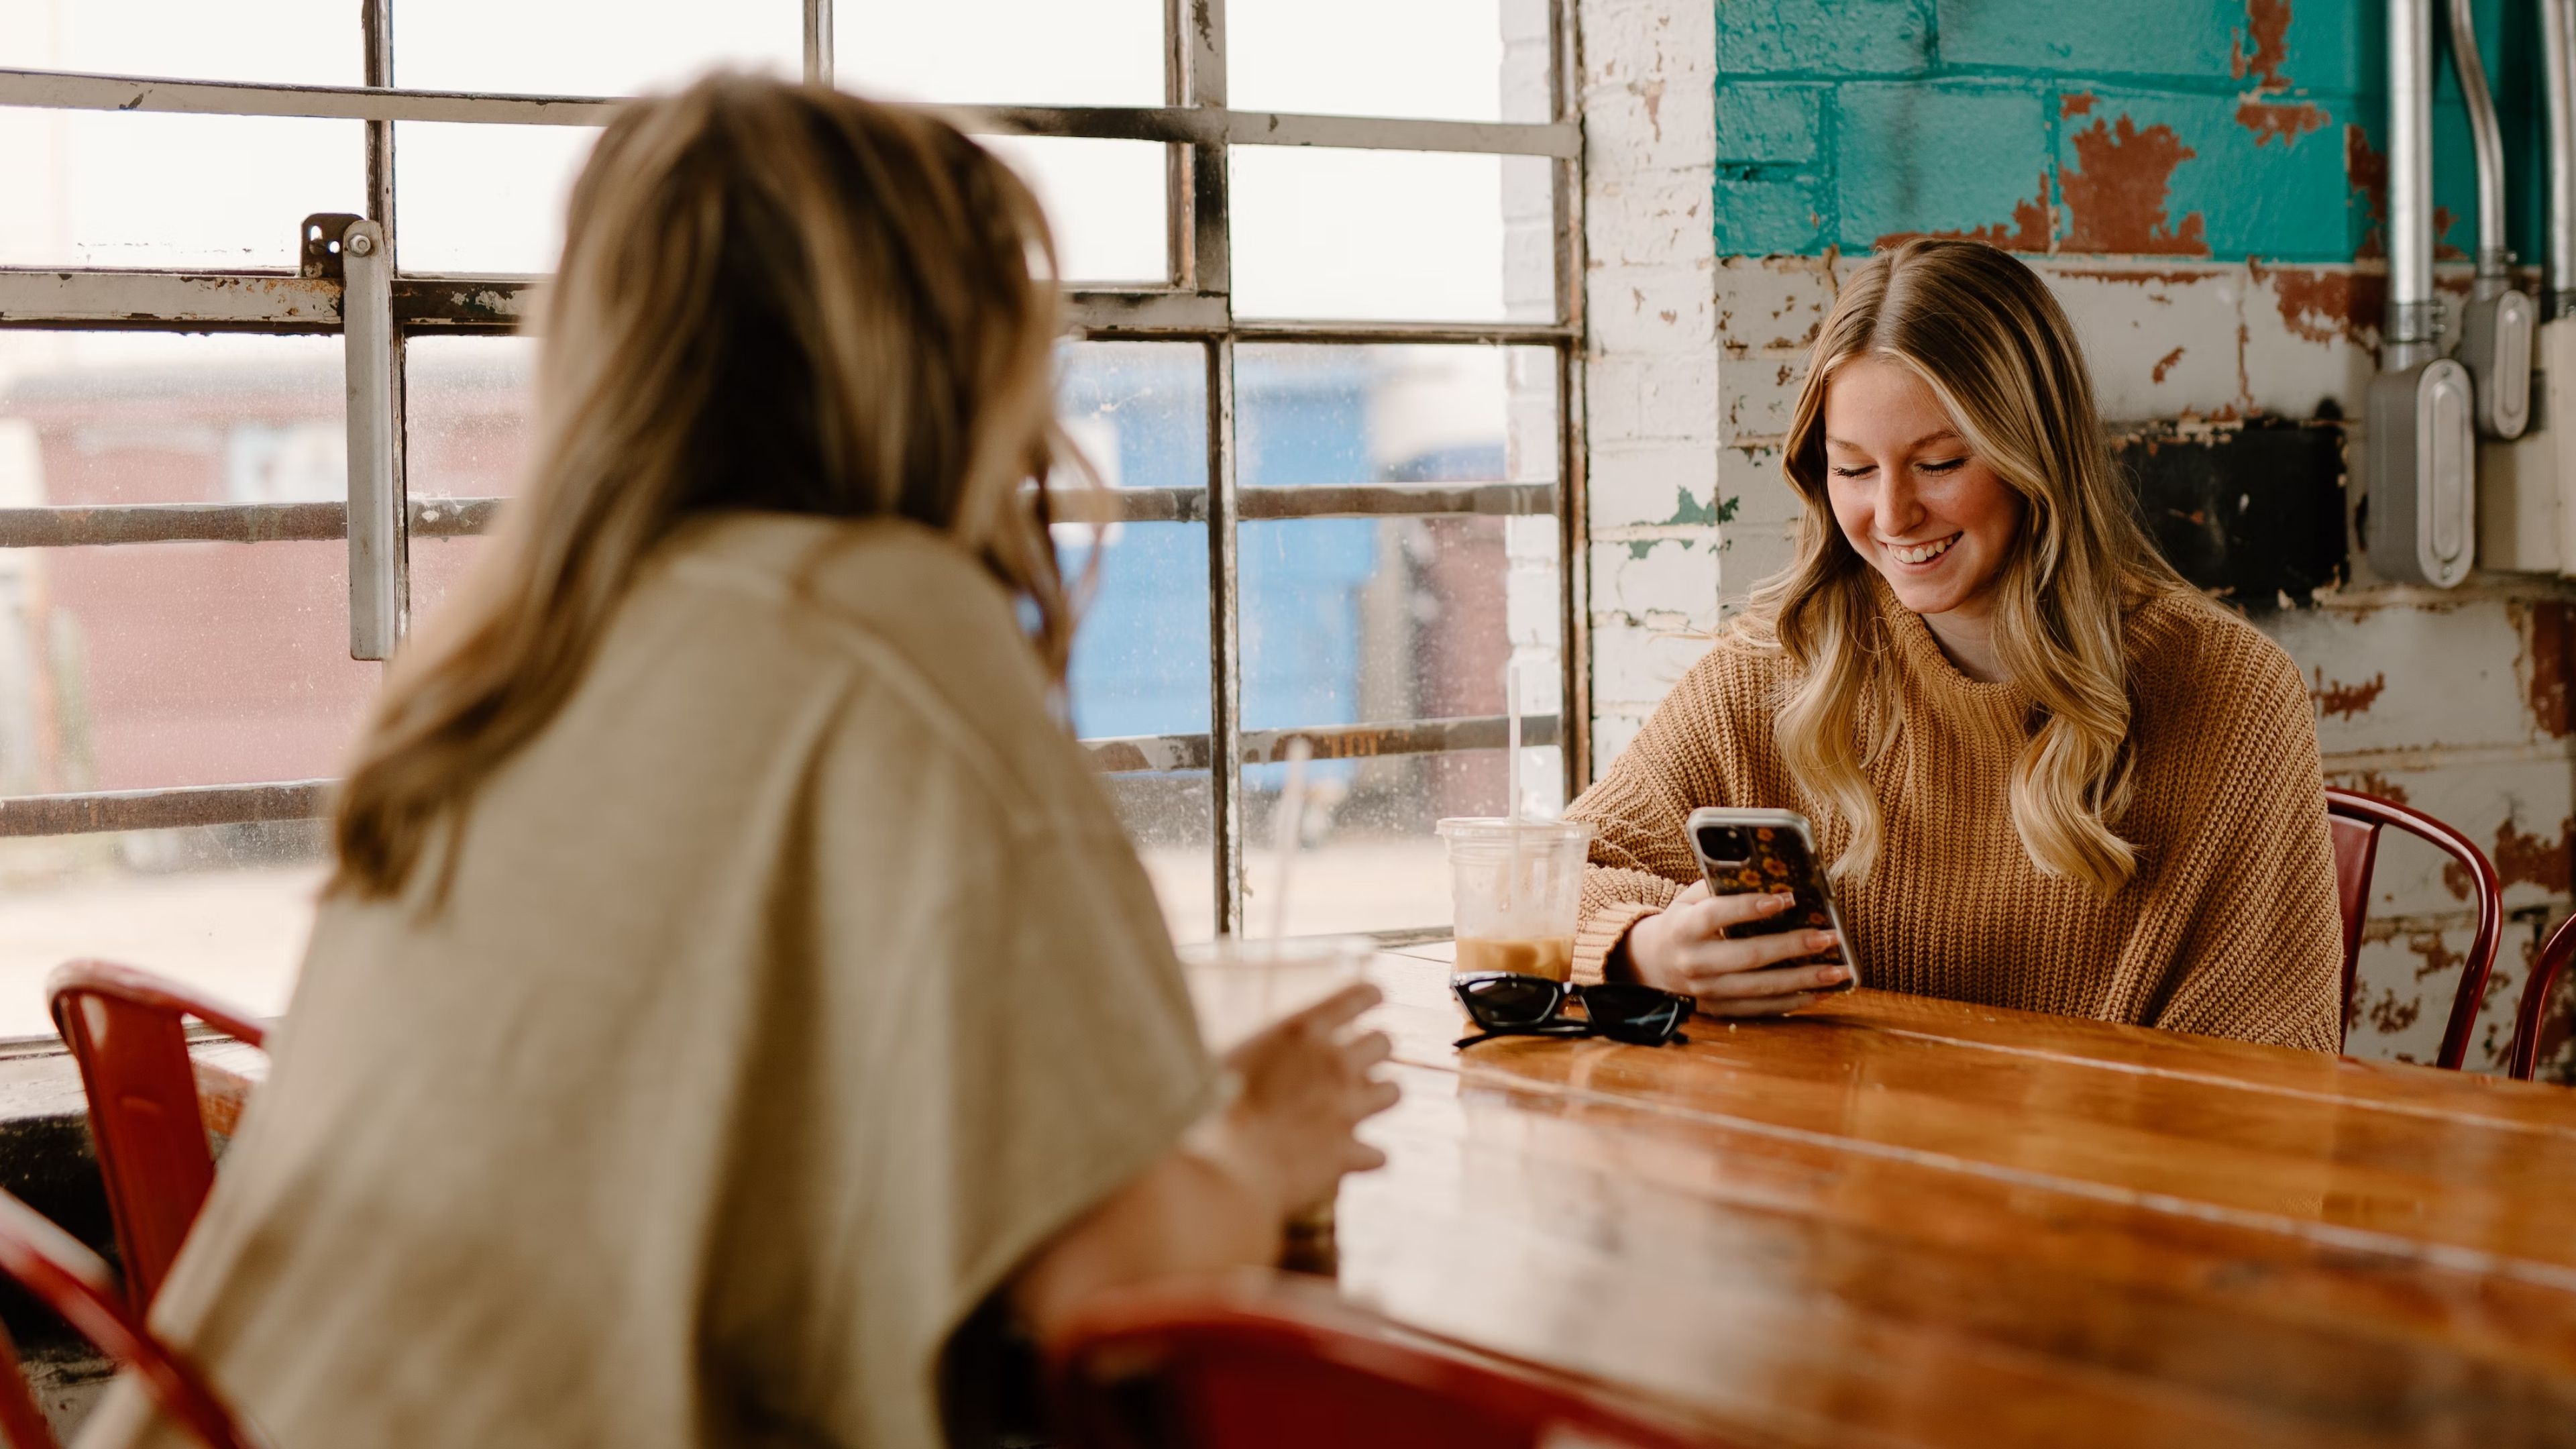 Women in cafe using phones